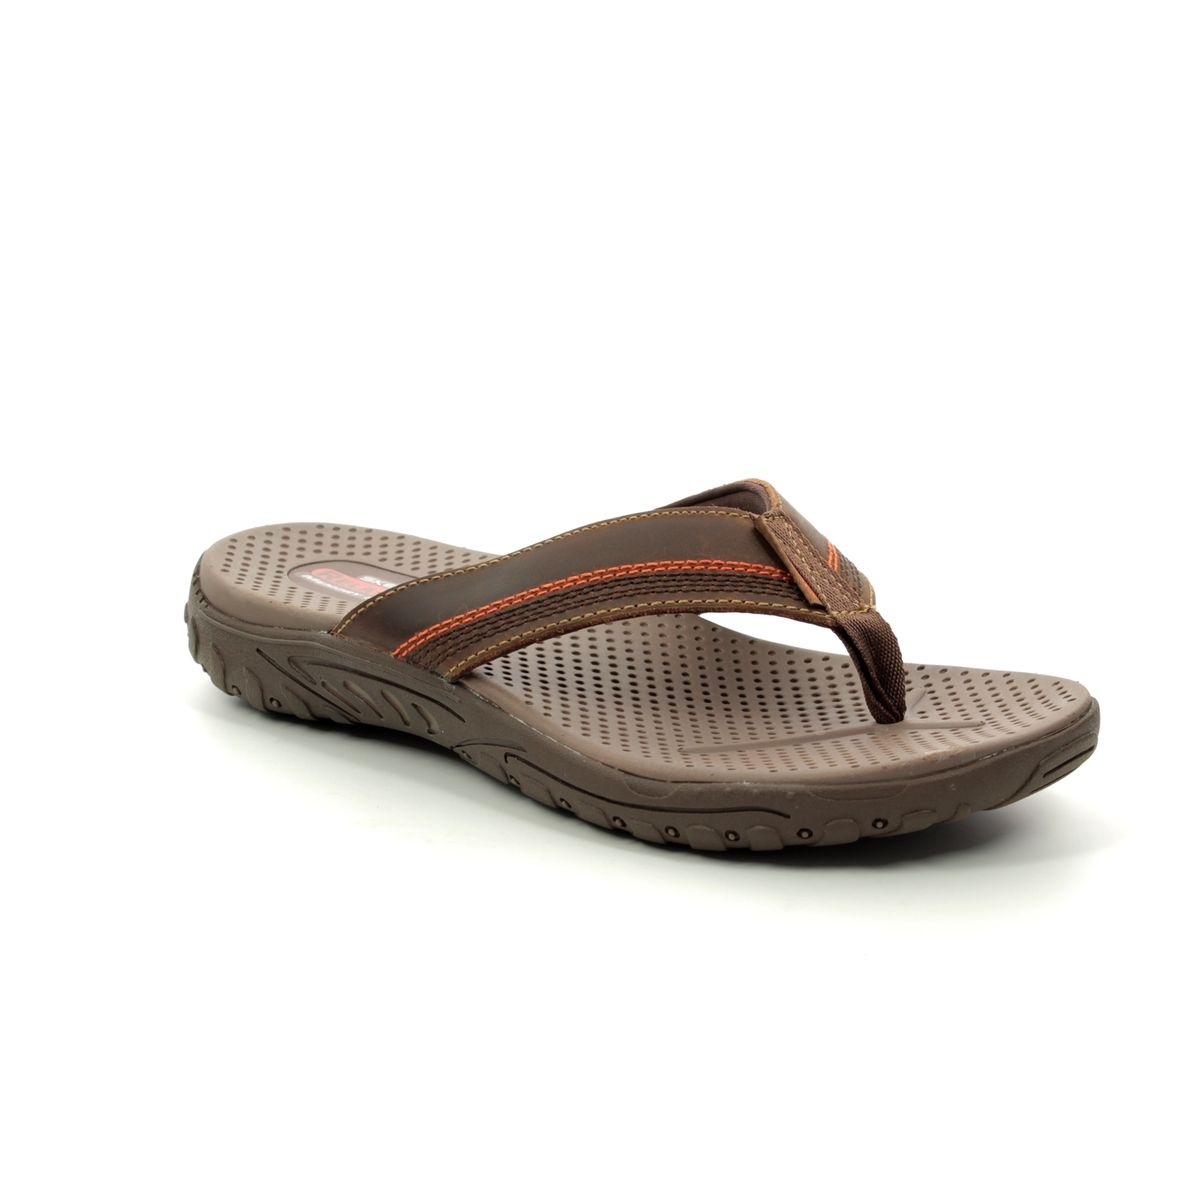 skechers sandals brown